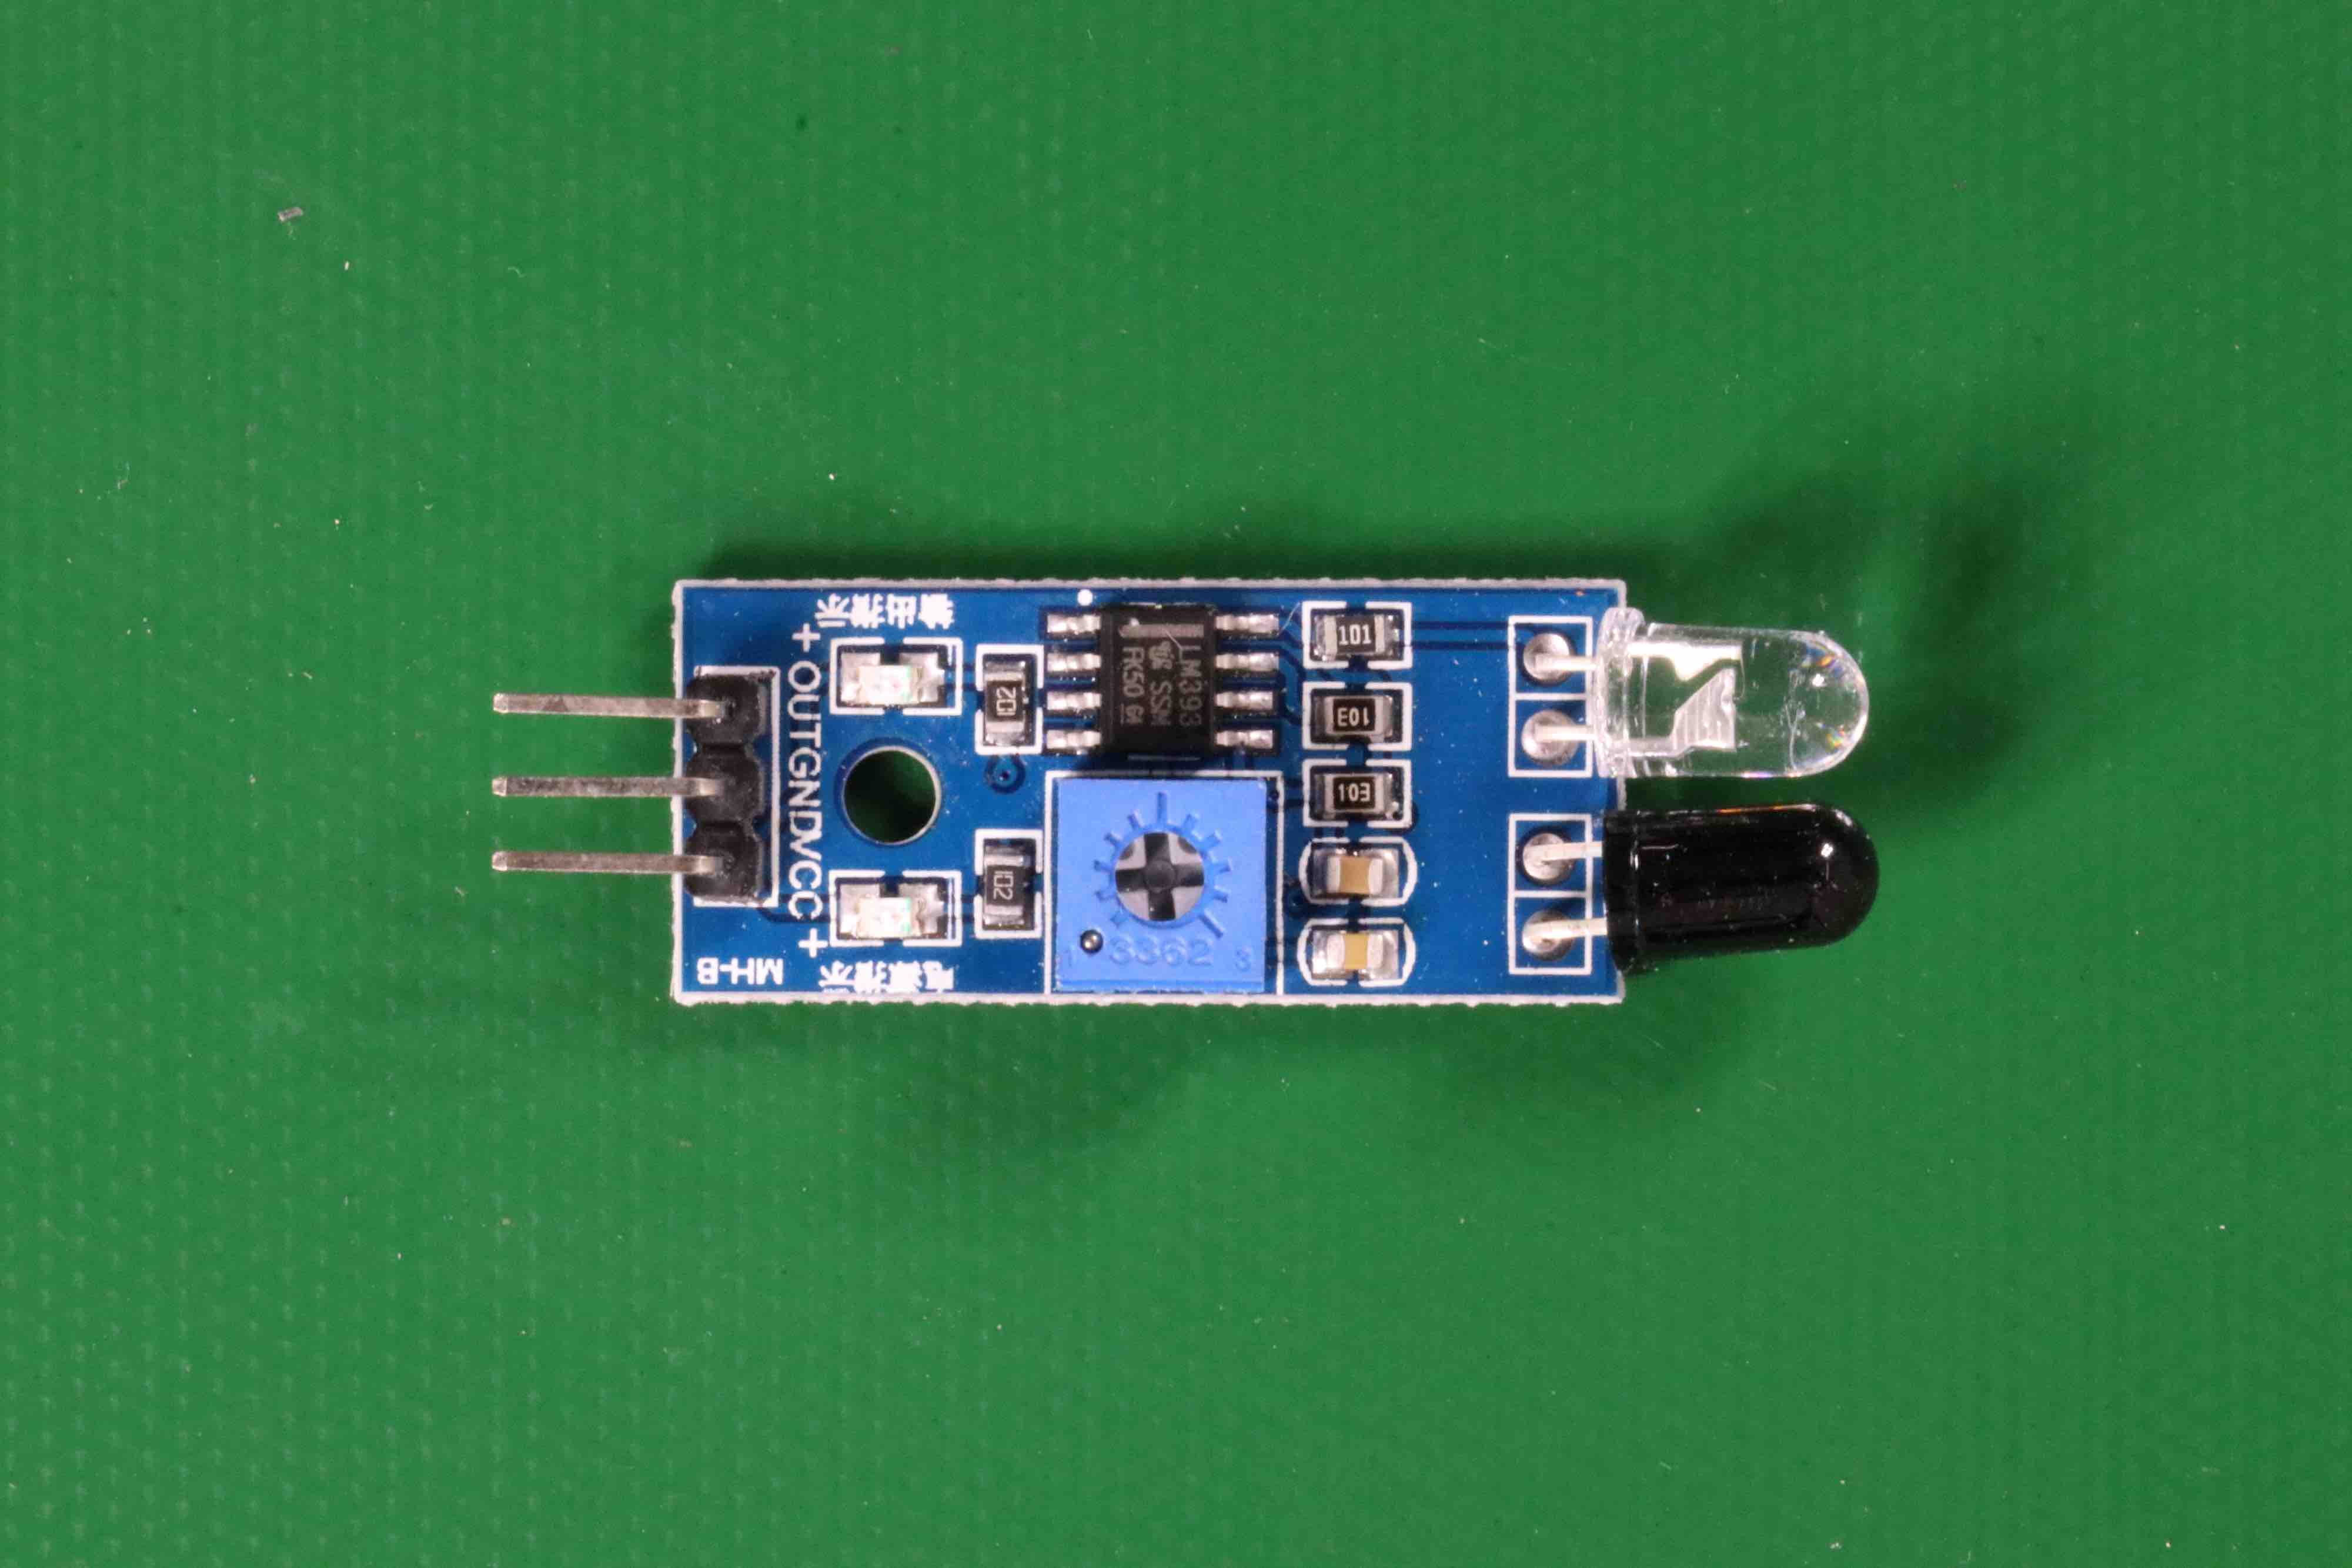 Circuito pequeno com vários componentes eletrônicos e pinos de conexão.